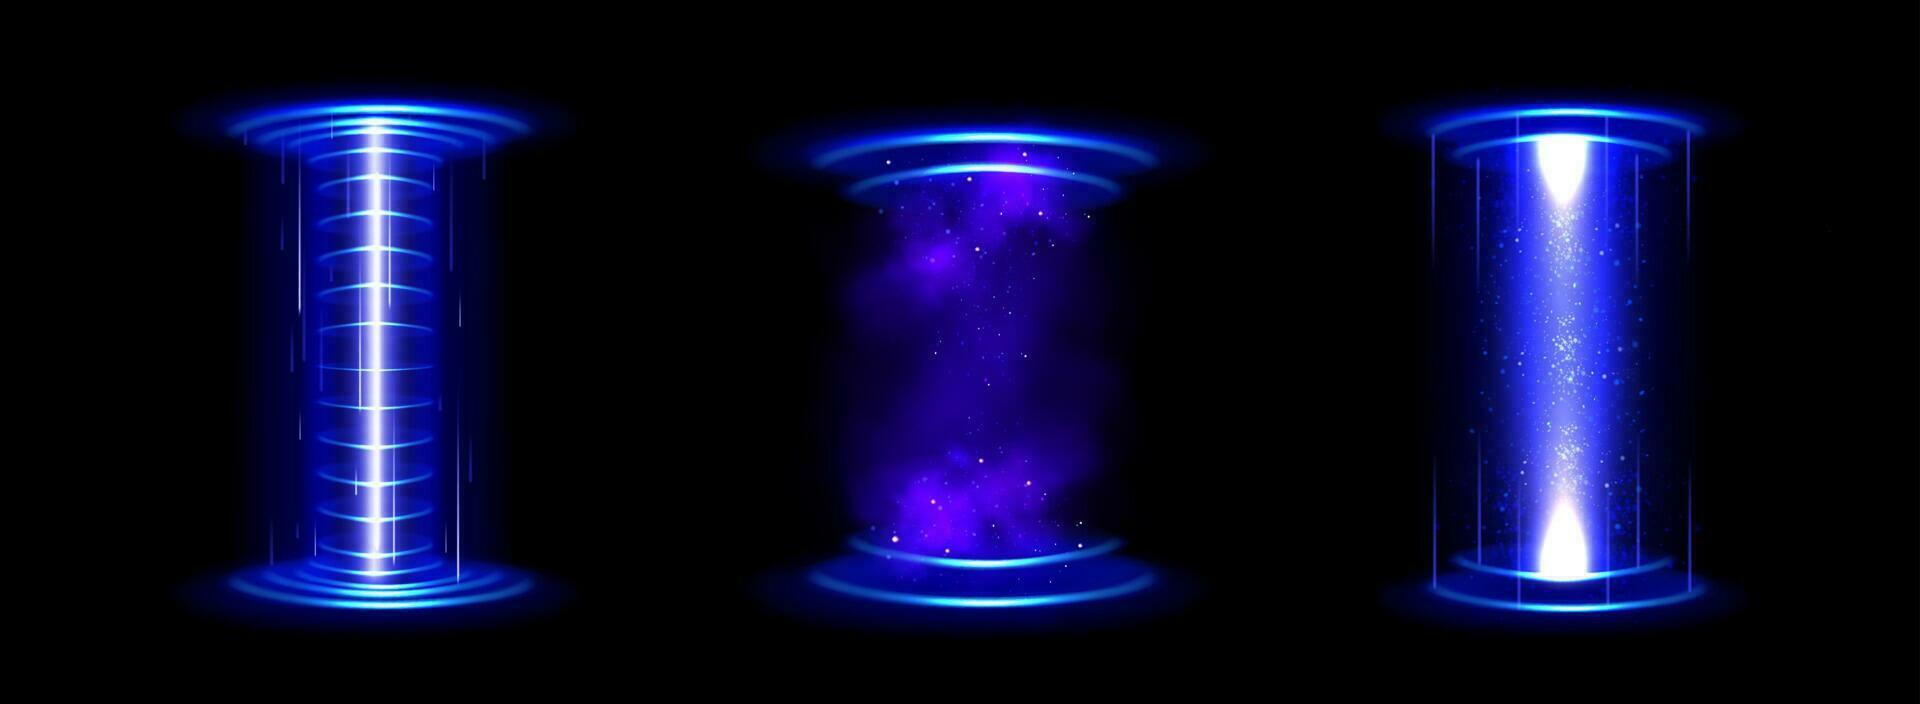 Kreis Hologramm Spiel Portal mit hud Licht bewirken vektor